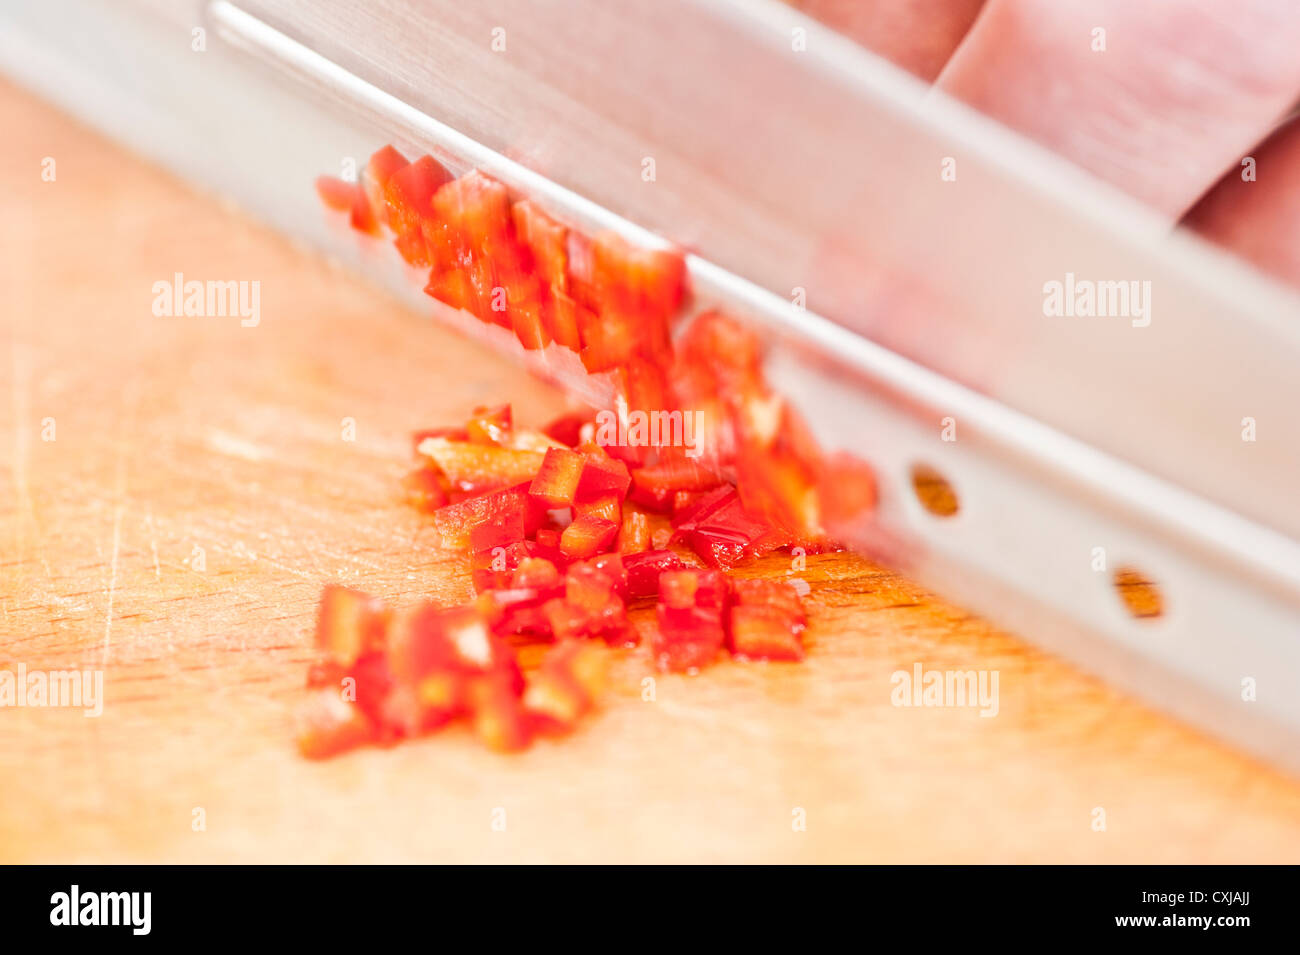 Nahaufnahme von roten Chilischote gehackt wird von einem Koch auf einem Holzbrett Stockfoto